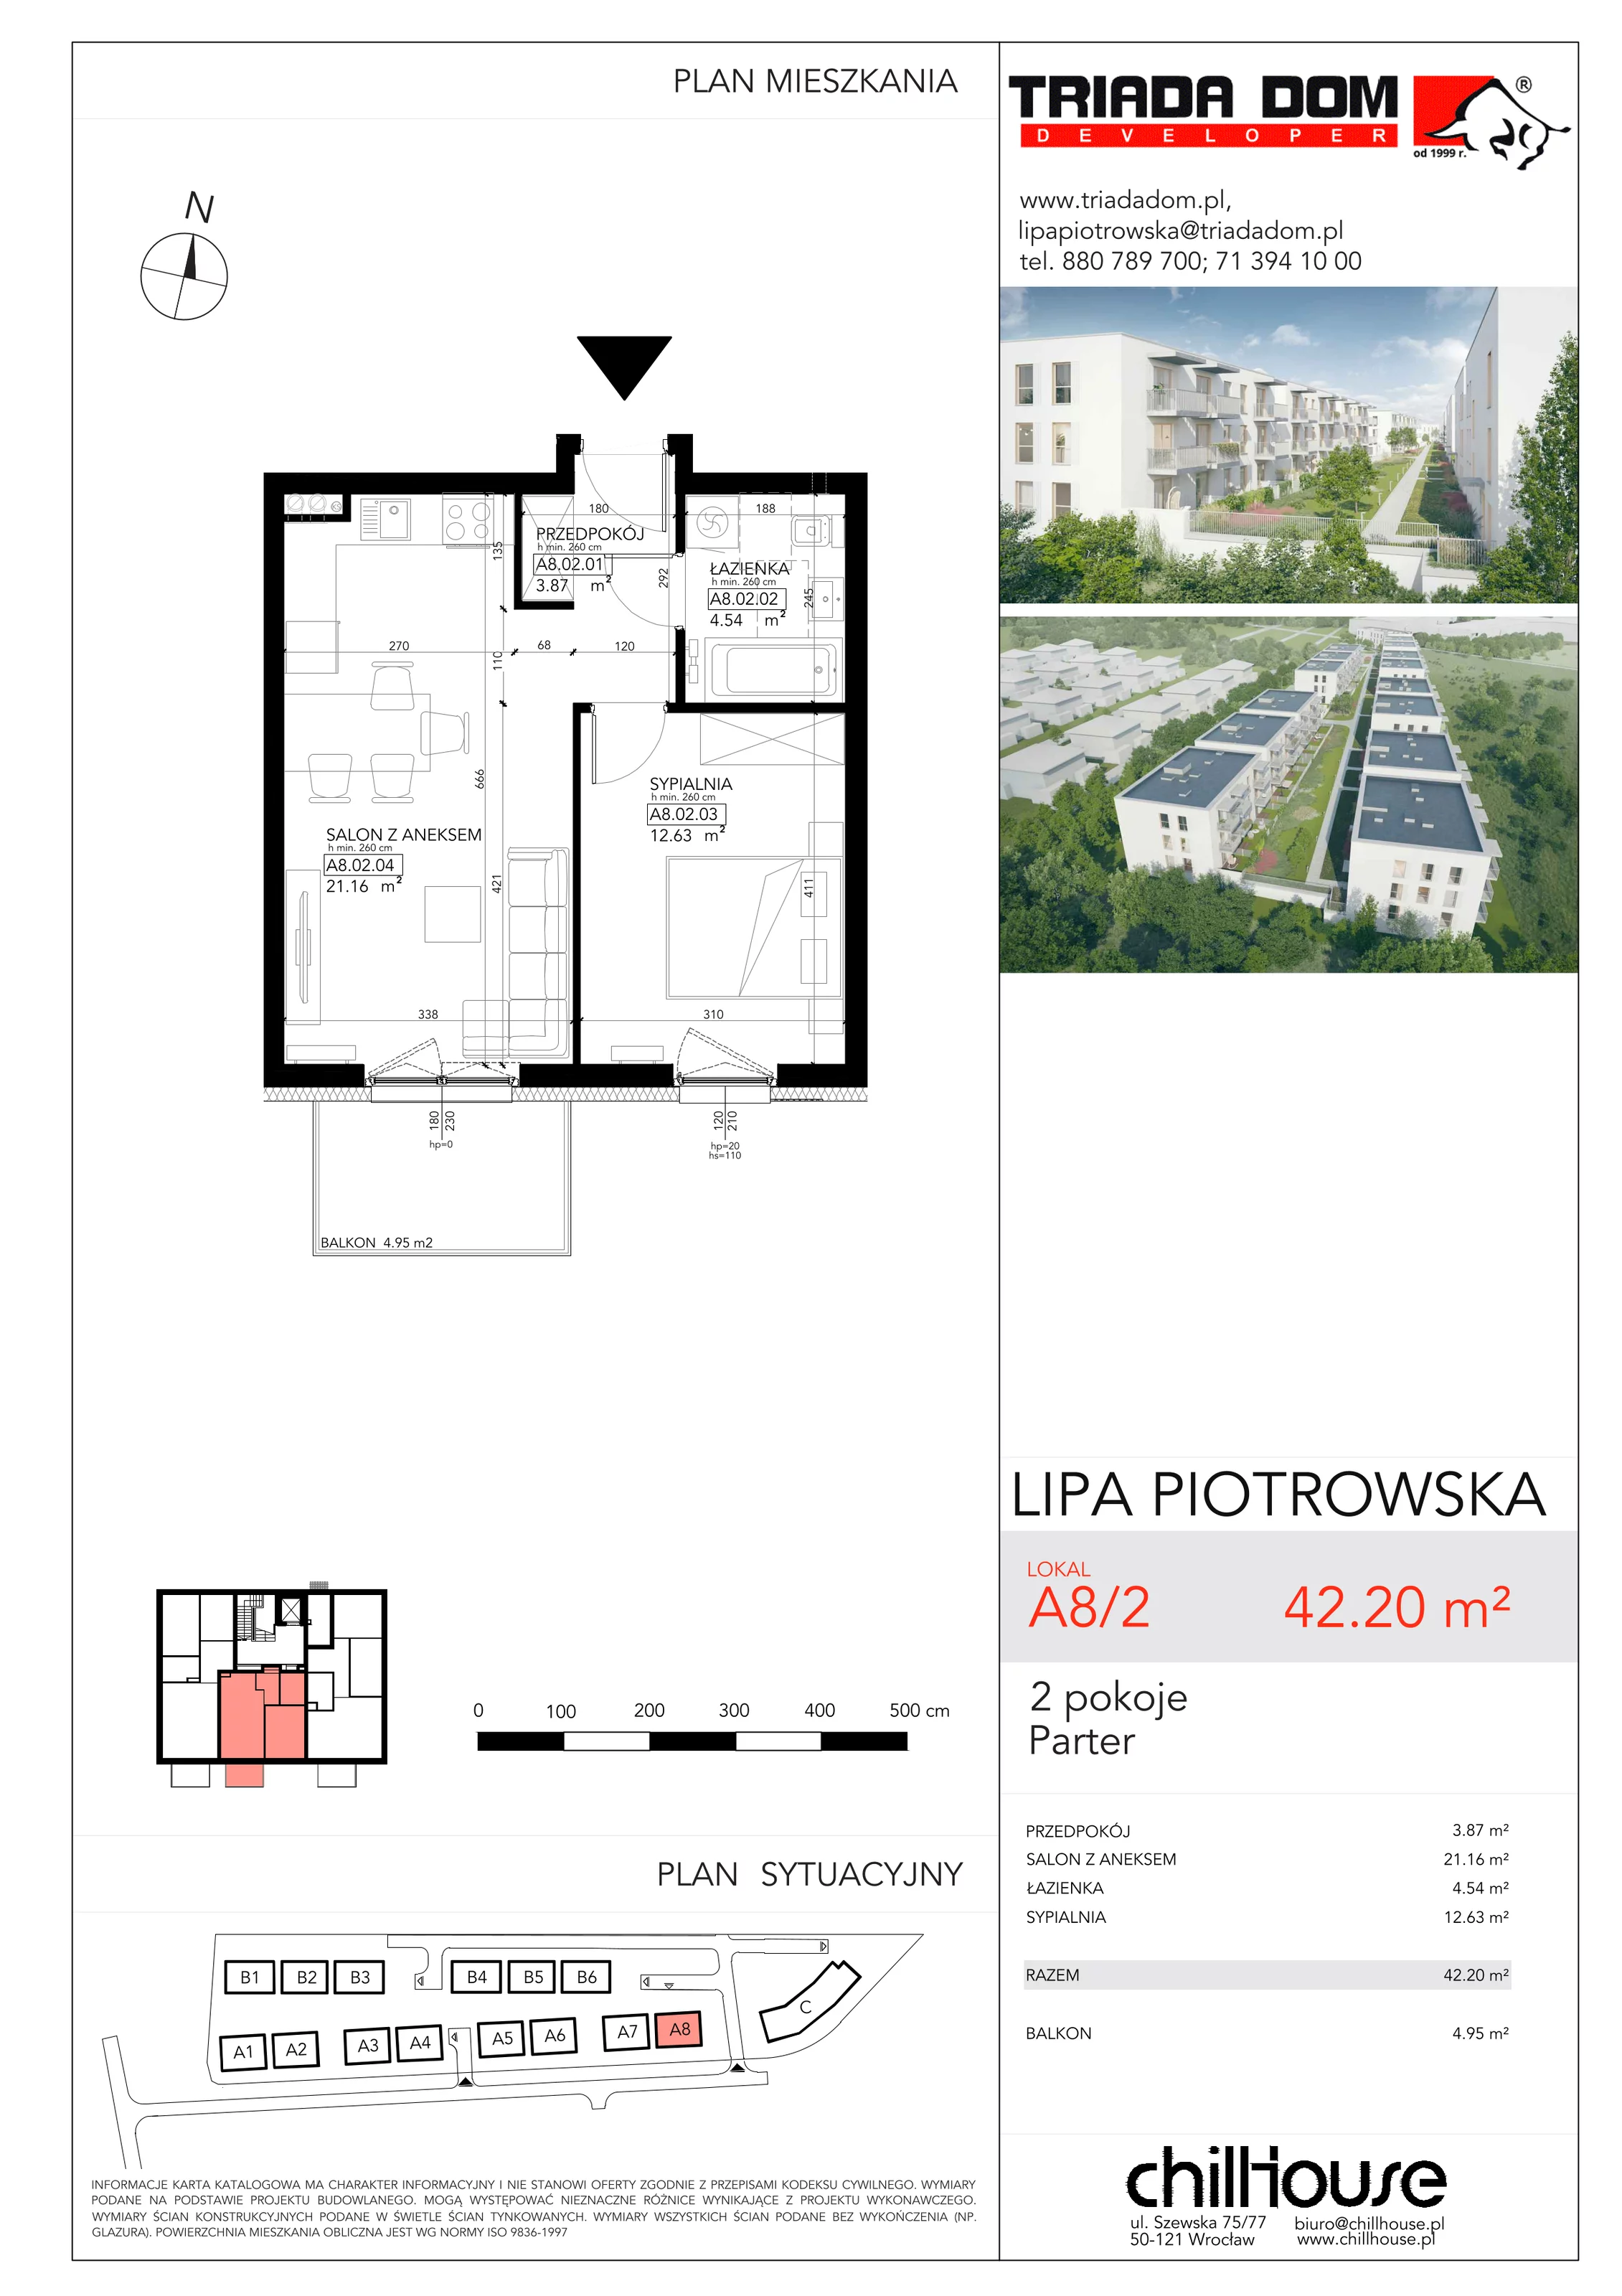 Mieszkanie 42,20 m², parter, oferta nr A82, Lipa Piotrowska, Wrocław, Lipa Piotrowska, ul. Lawendowa / Melisowa